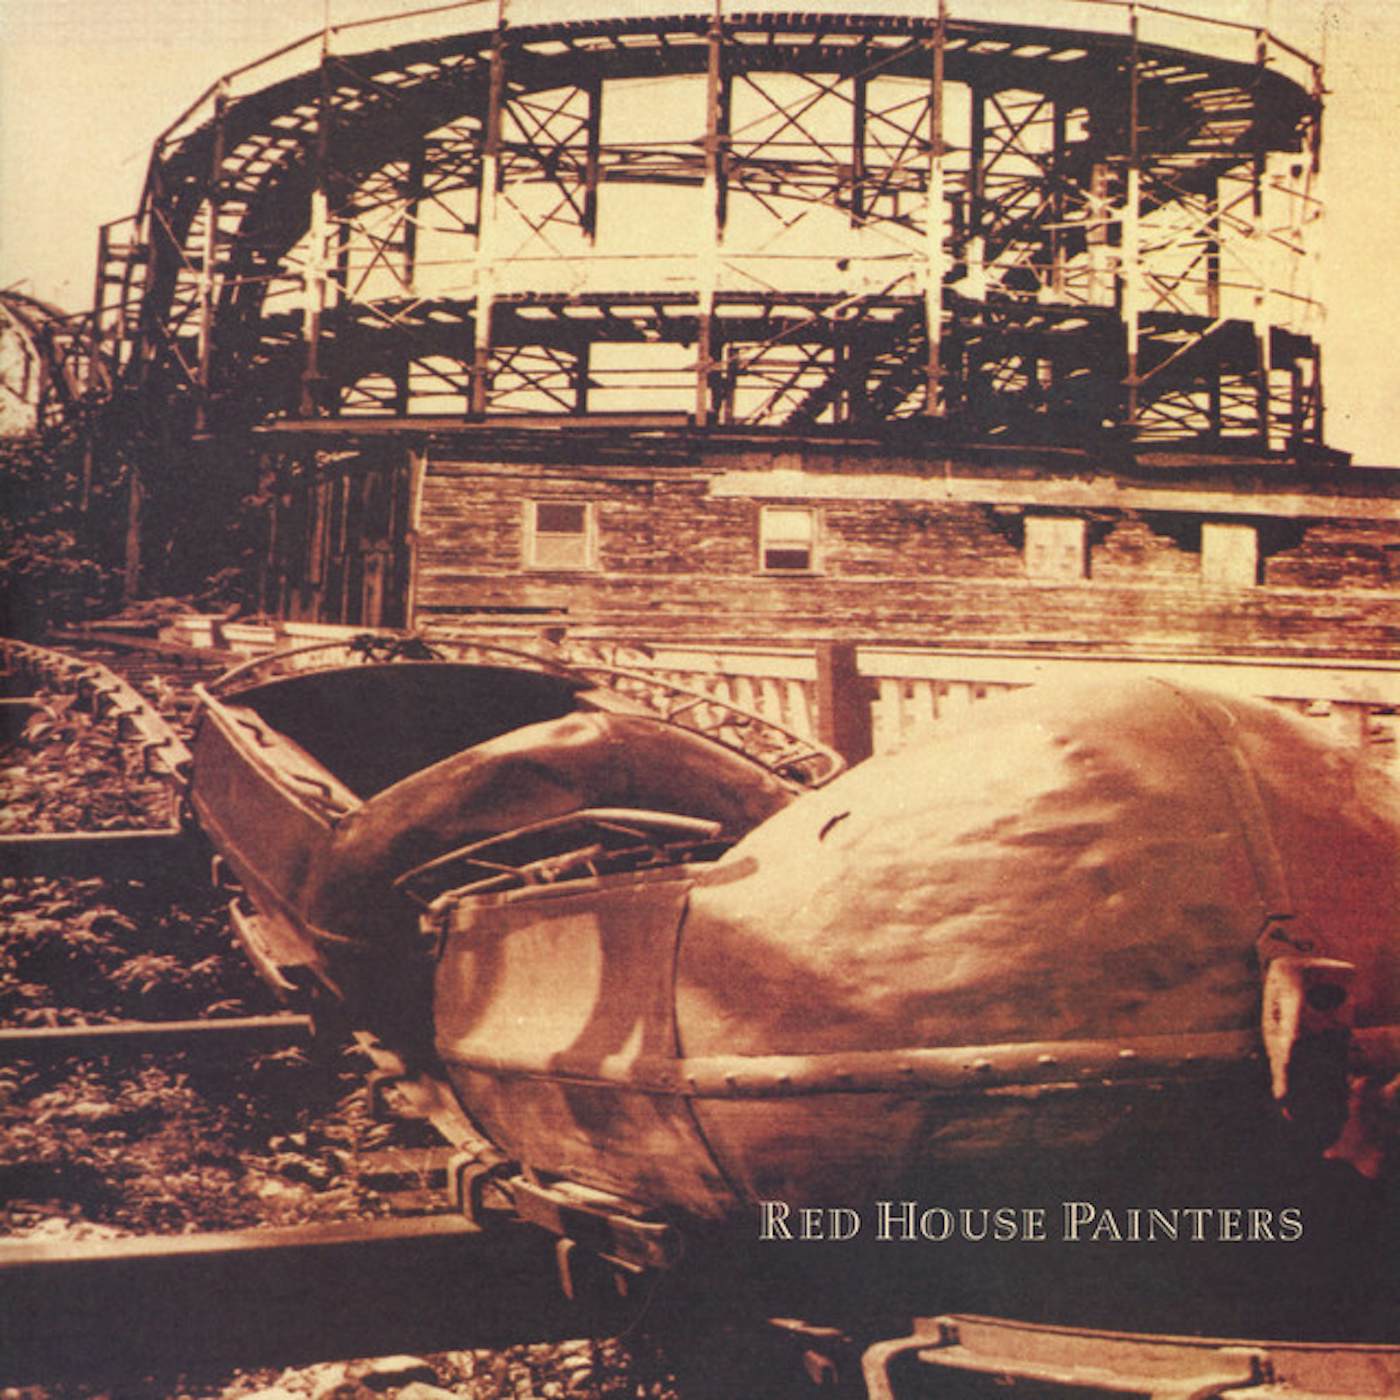 RED HOUSE PAINTERS (BRIDGE) Vinyl Record